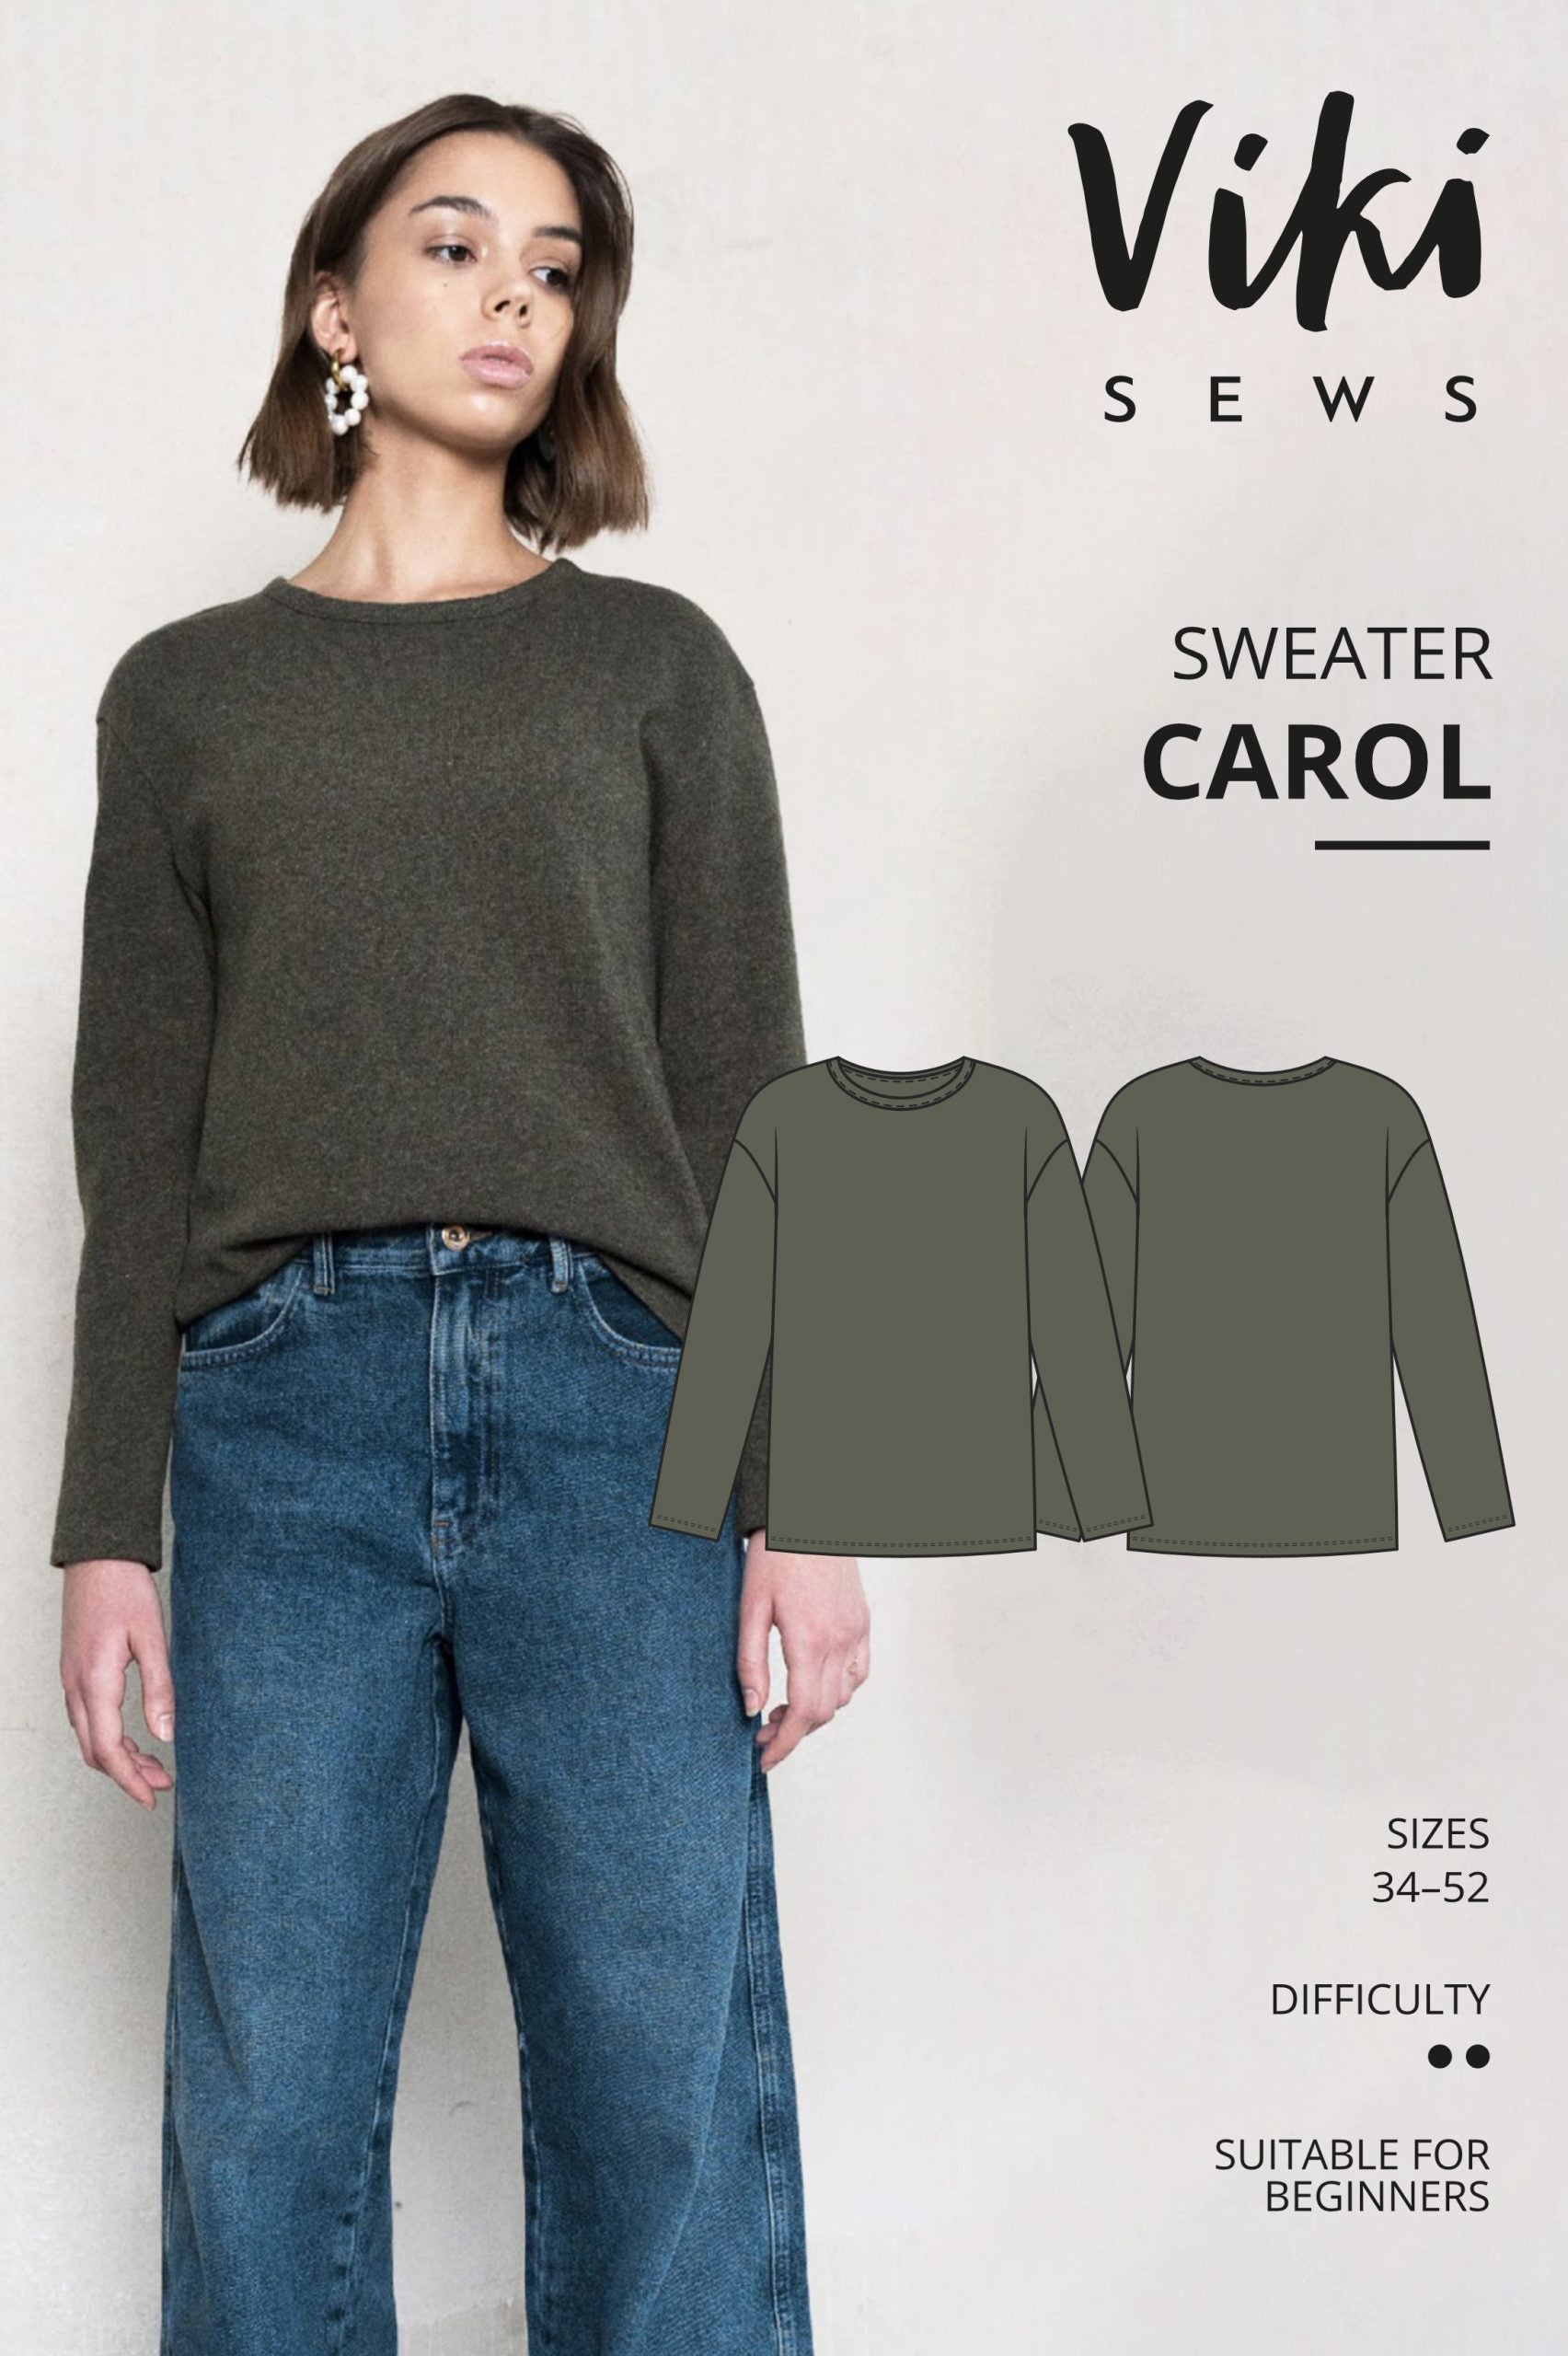 Vikisews Carol Sweater PDF